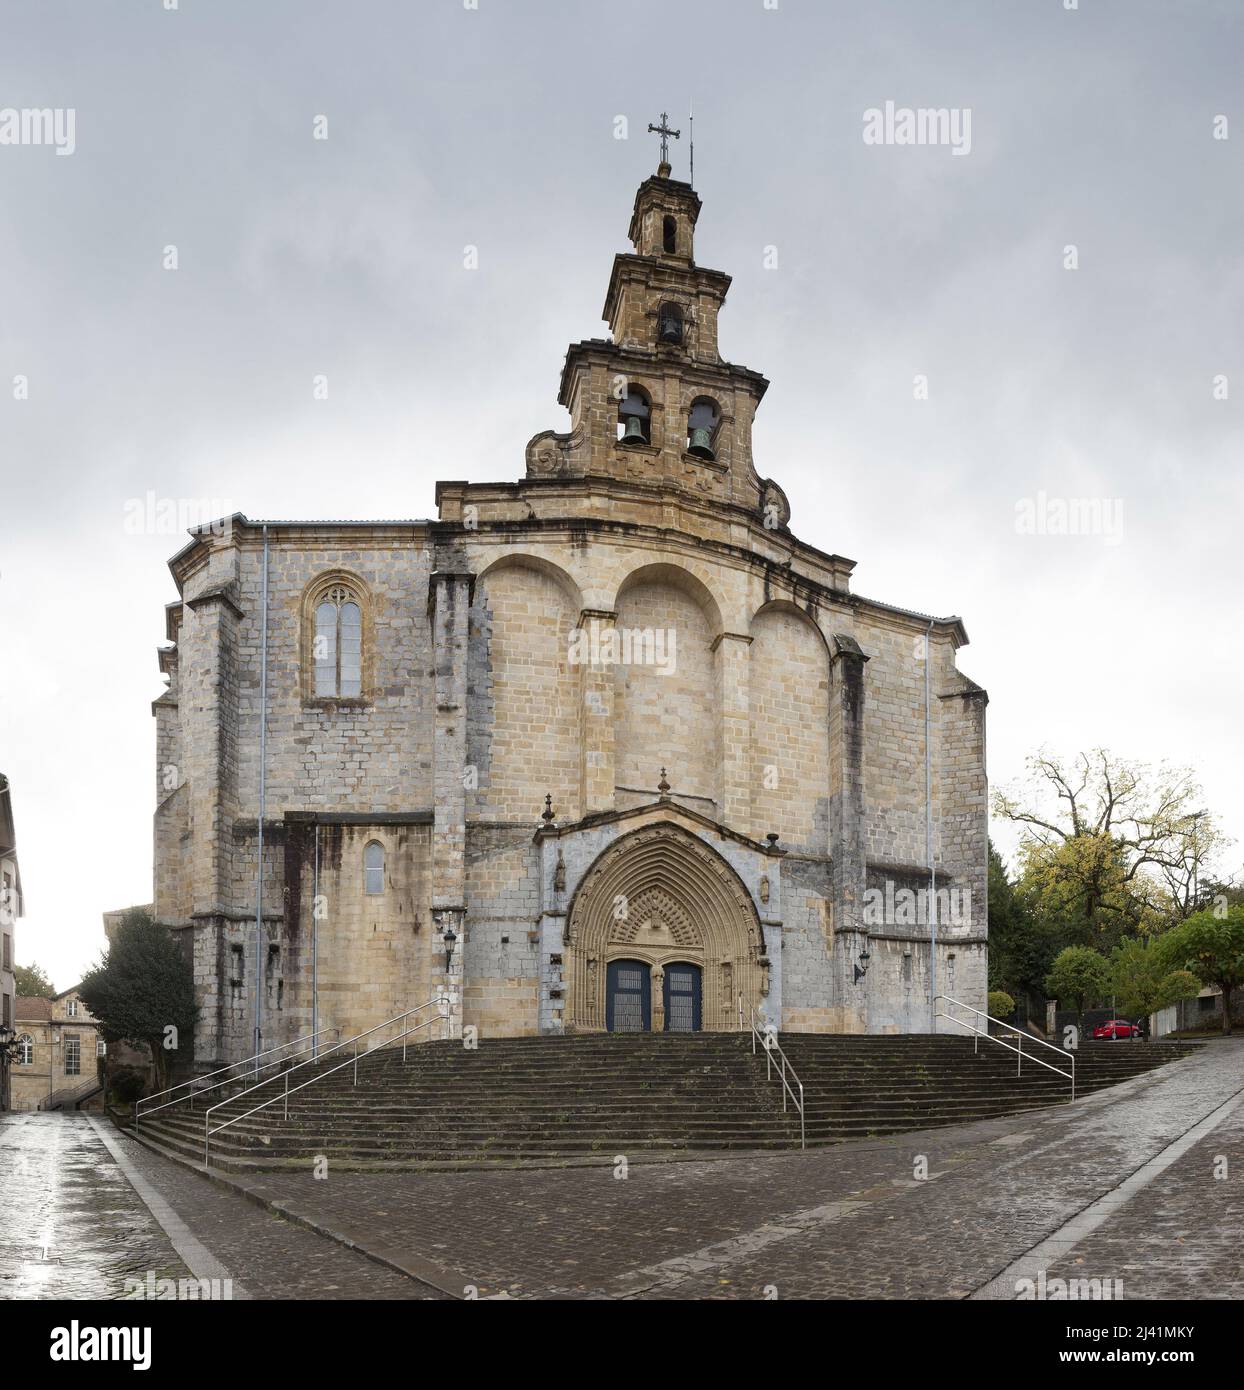 Facade de l’eglise Santa Maria a Guernica, construite au 16eme siecle dans les Styles gothique et renaissance, architecture religieuse du Pays basque espagnole. Guernica, Biscaye, Espagne. Foto Stock